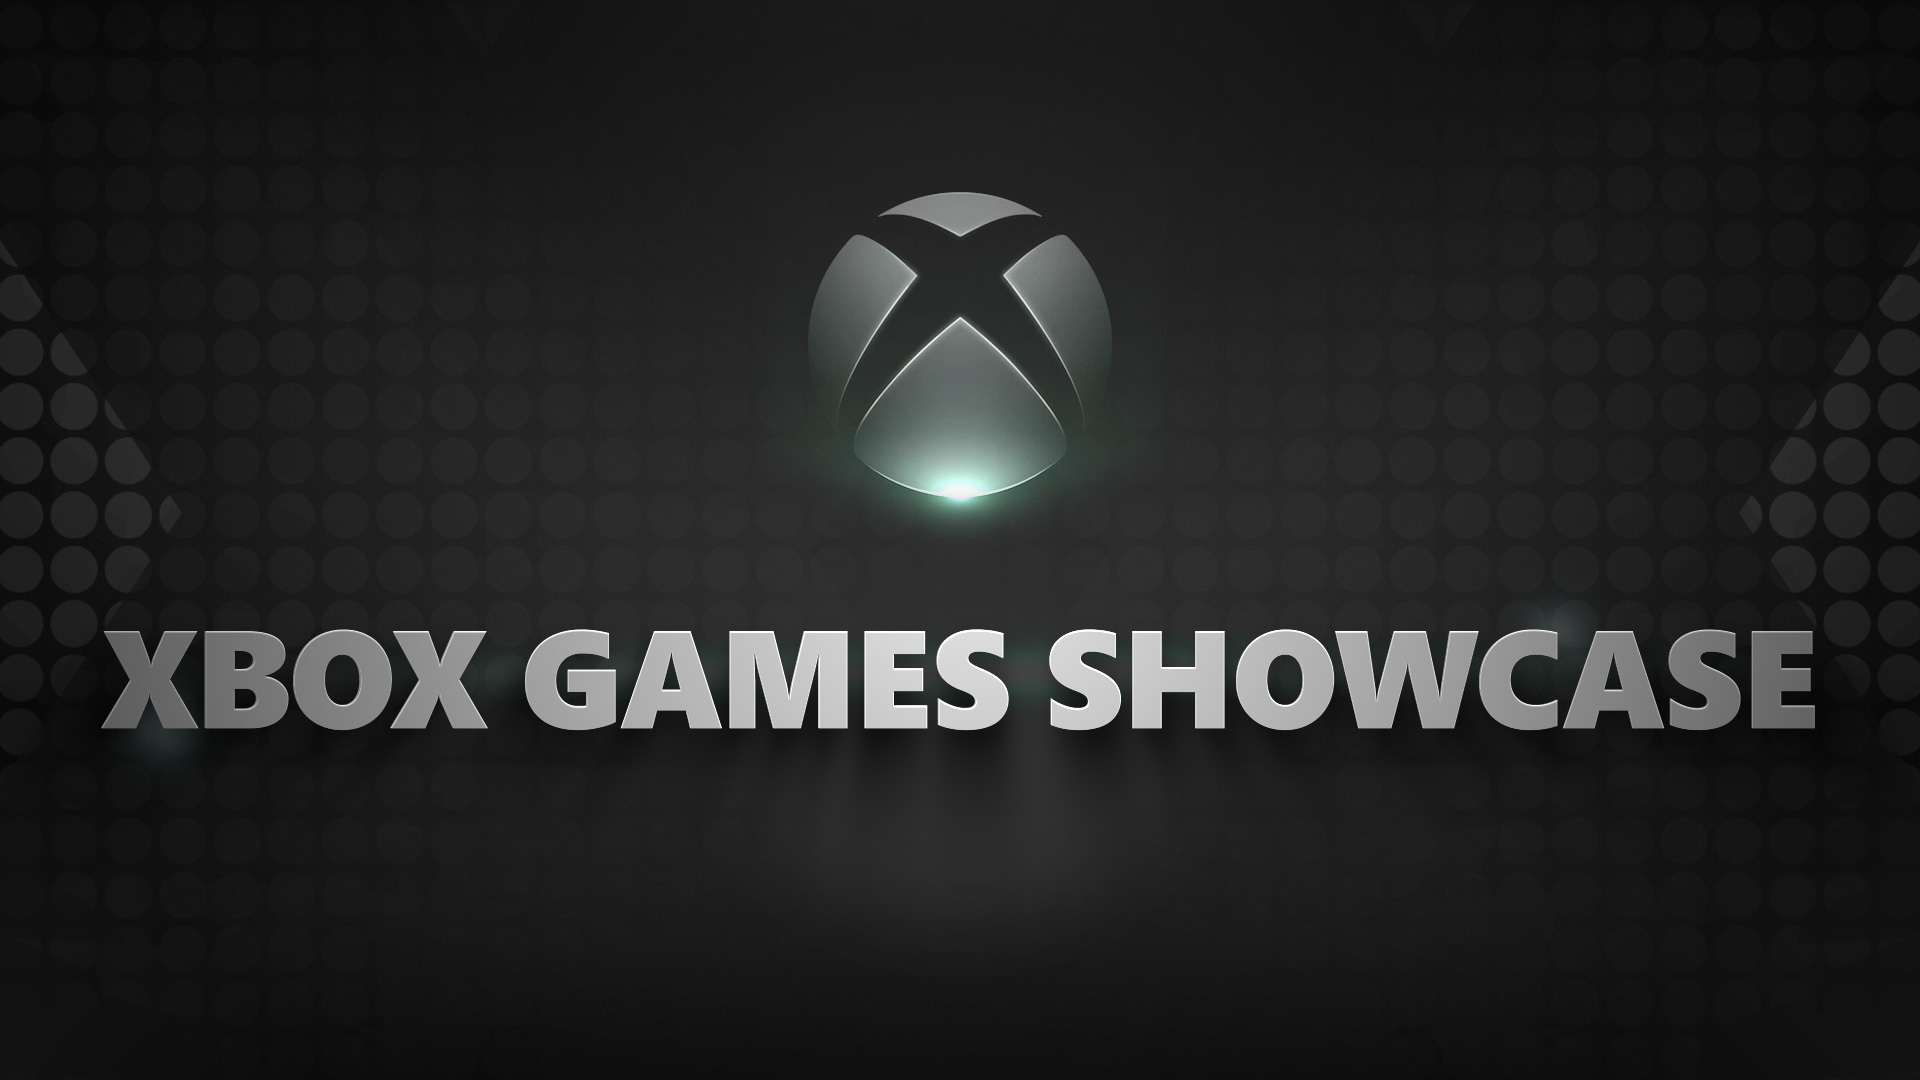 ملخص حدث Xbox Games Showcase 2020